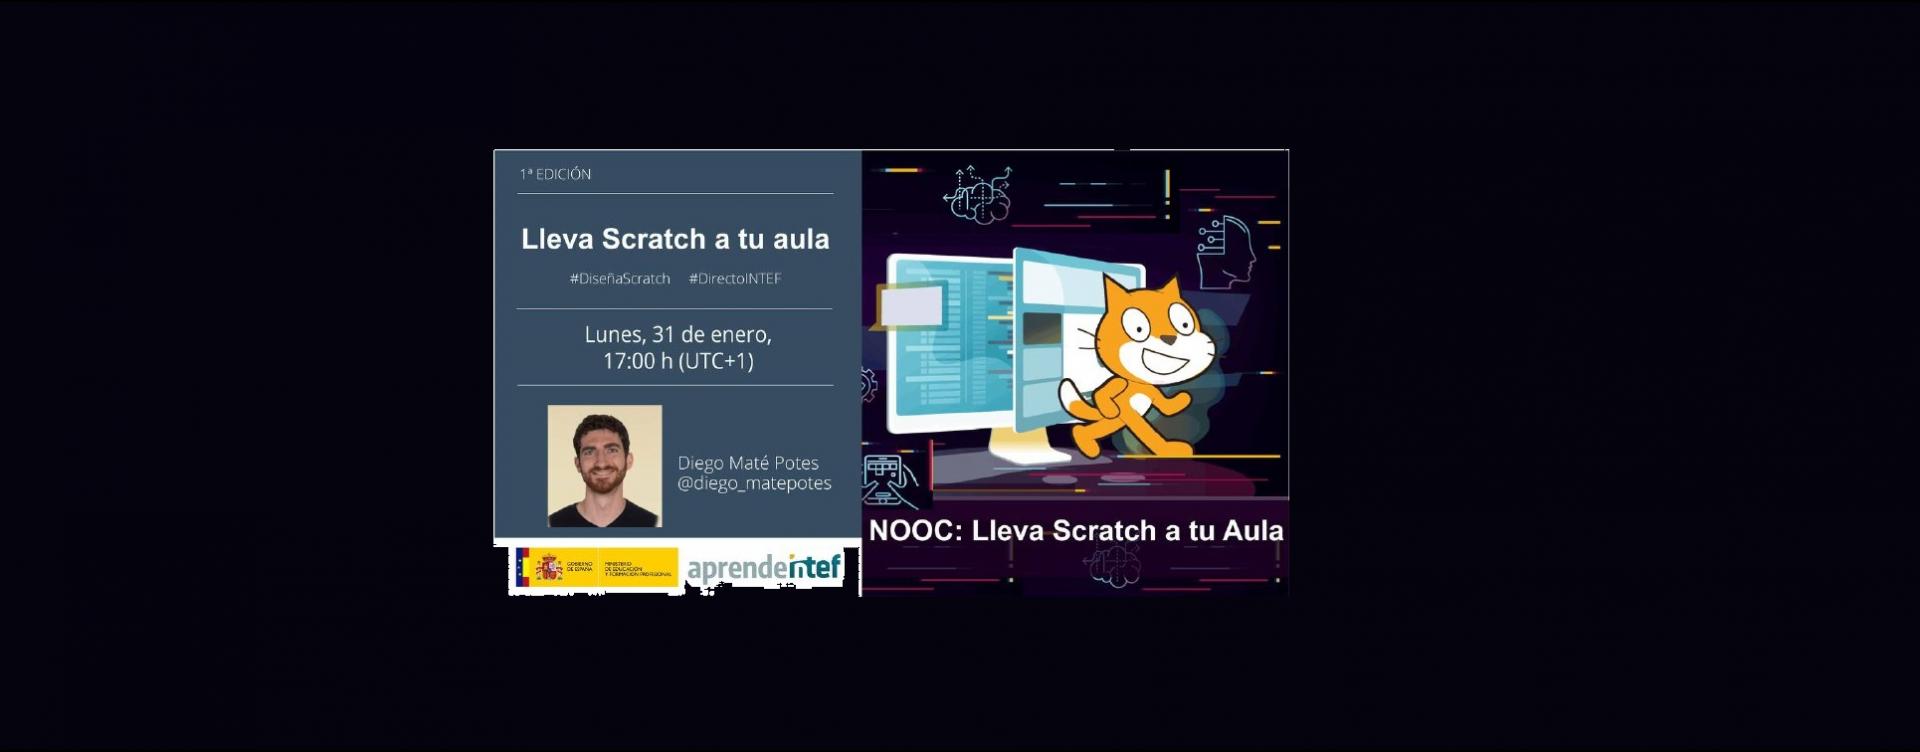 Diseña tu proyecto educativo en Scratch - Evento en directo